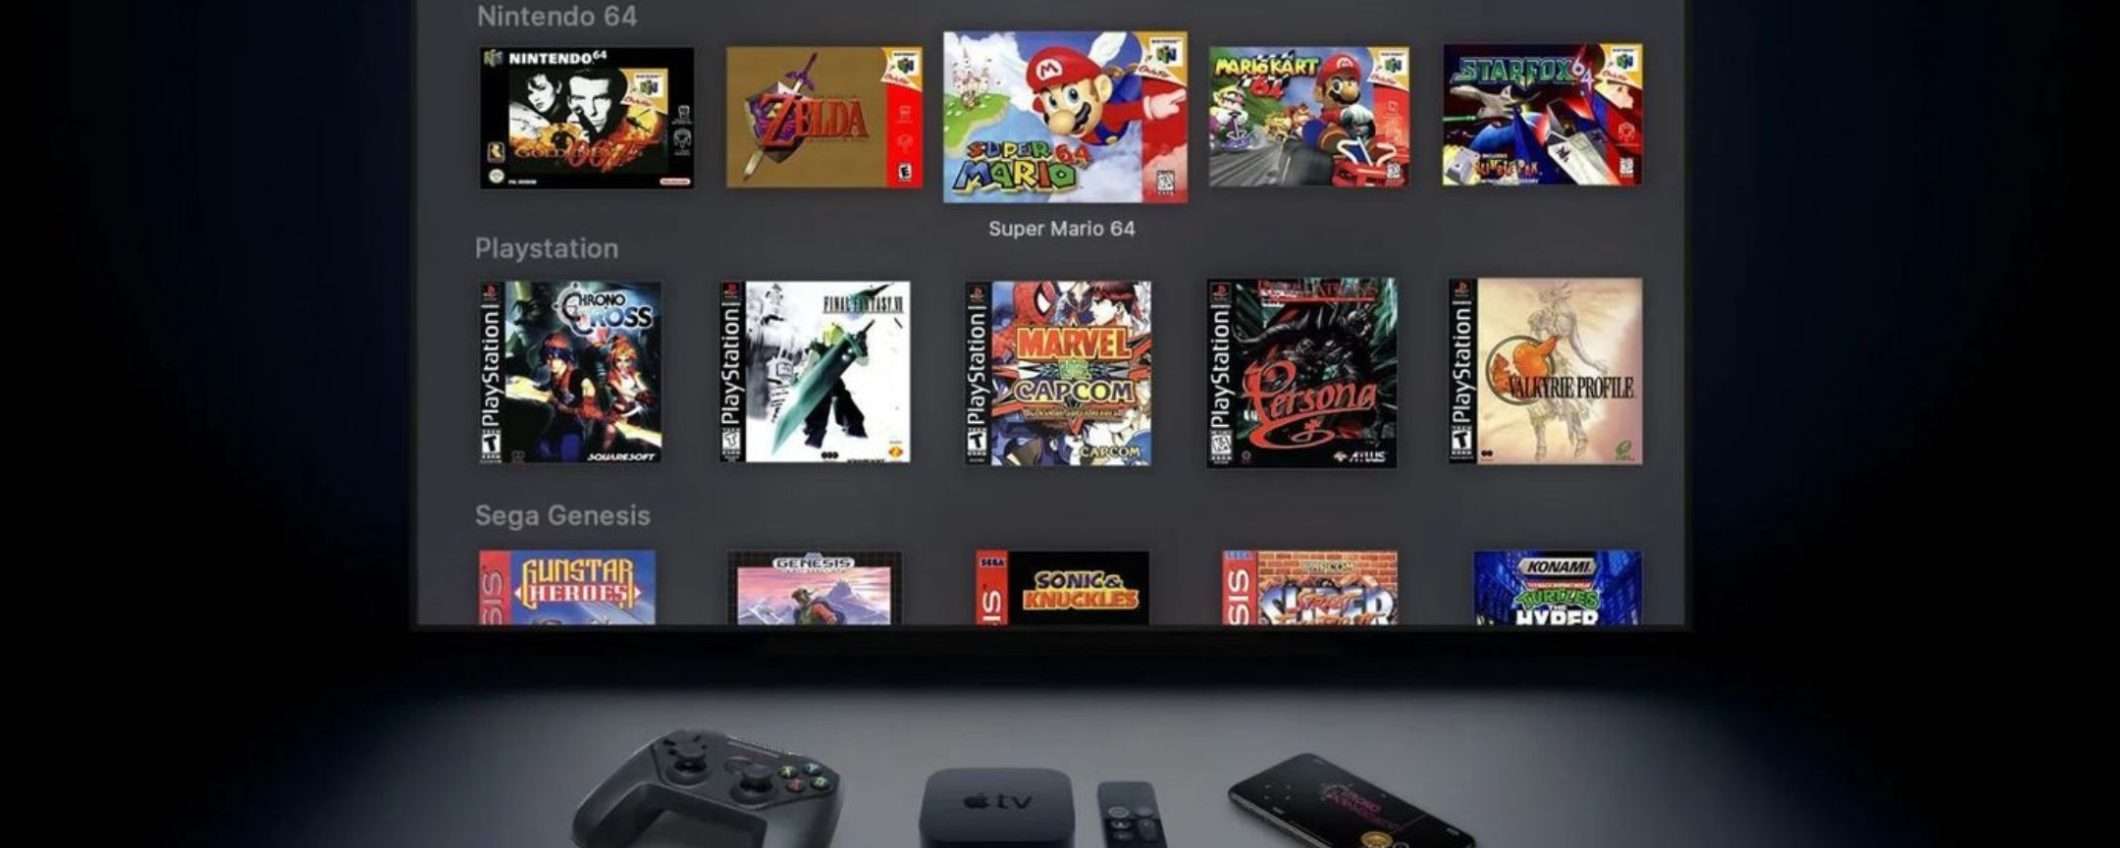 Apple TV: presto si potrà giocare ai vecchi videogame PlayStation, GameCube, Wii e SEGA